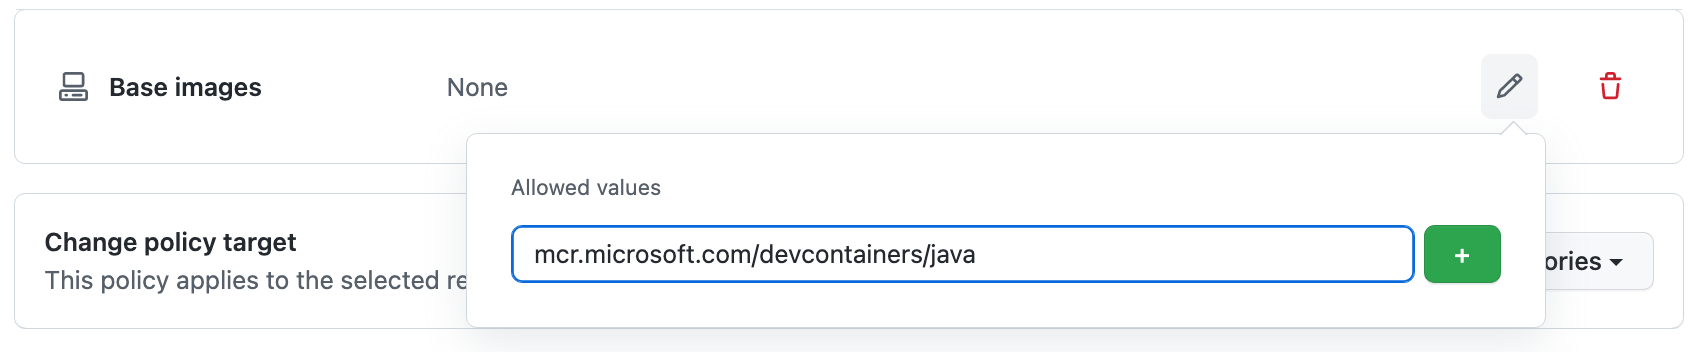 "허용되는 값" 필드에 입력한 URL "mcr.microsoft.com/vscode/devcontainers/java"의 스크린샷